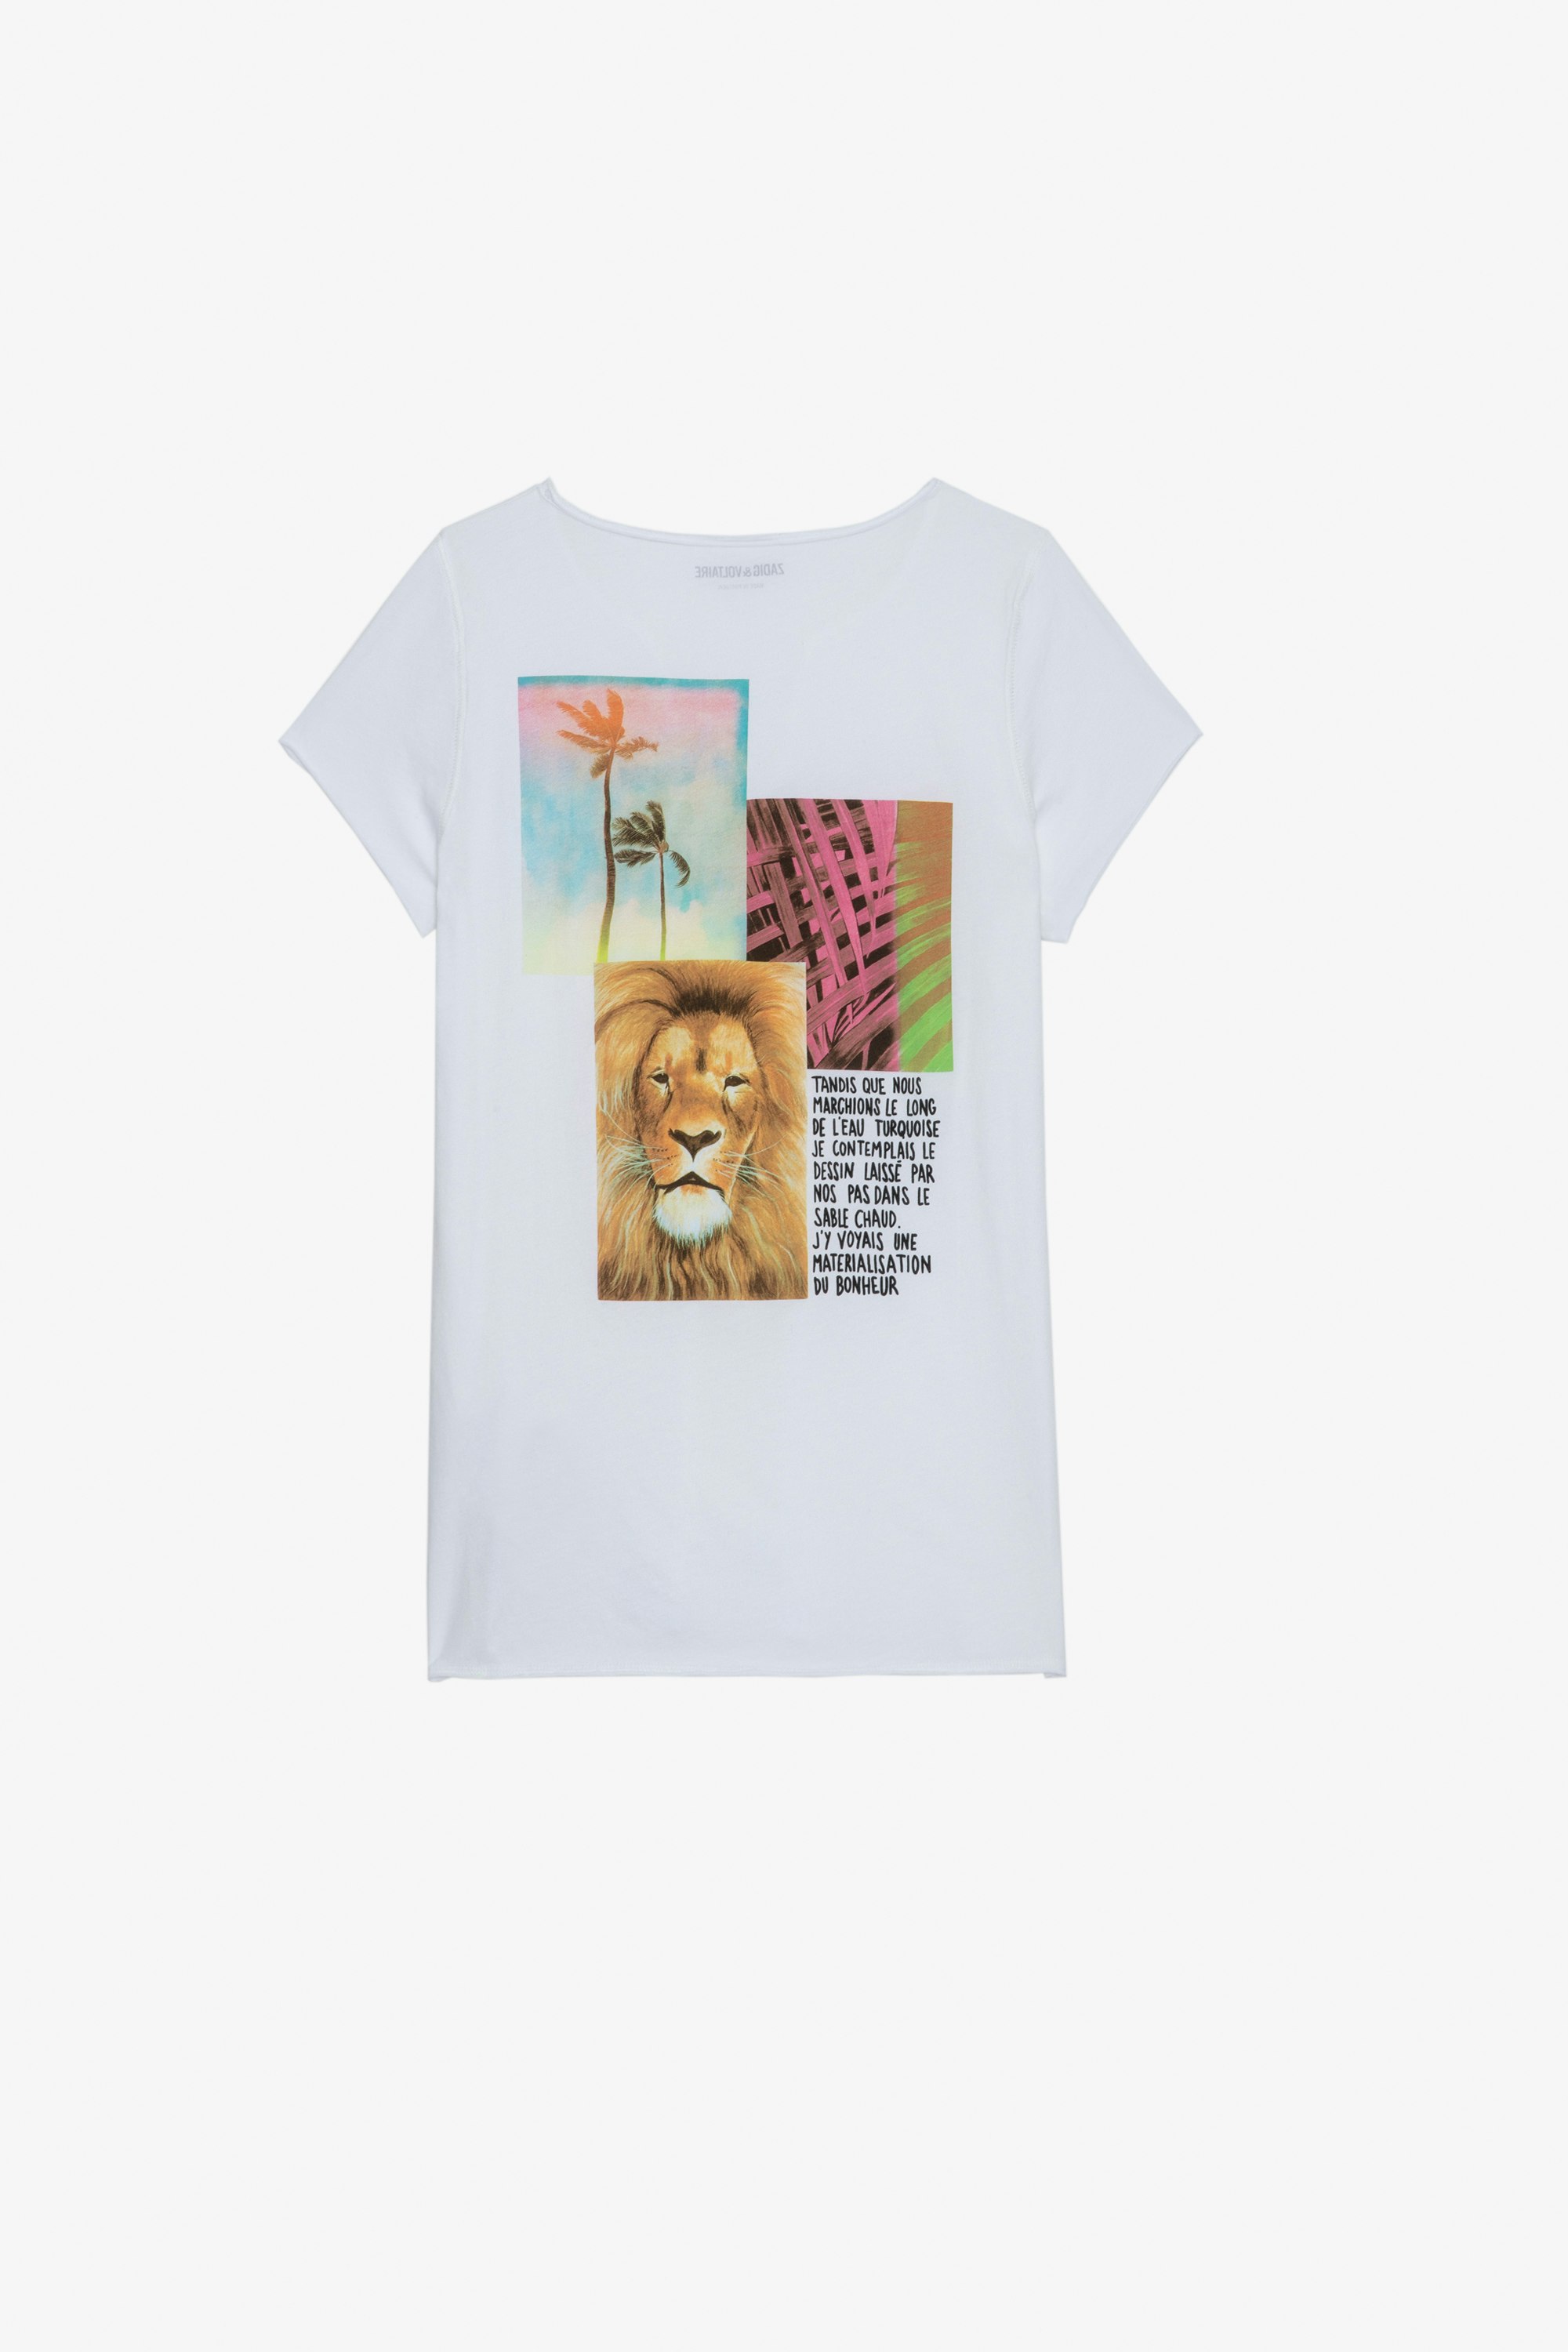 T-shirt serafino T-shirt serafino bianca con stampa fotografica leone e palma sul retro - Donna